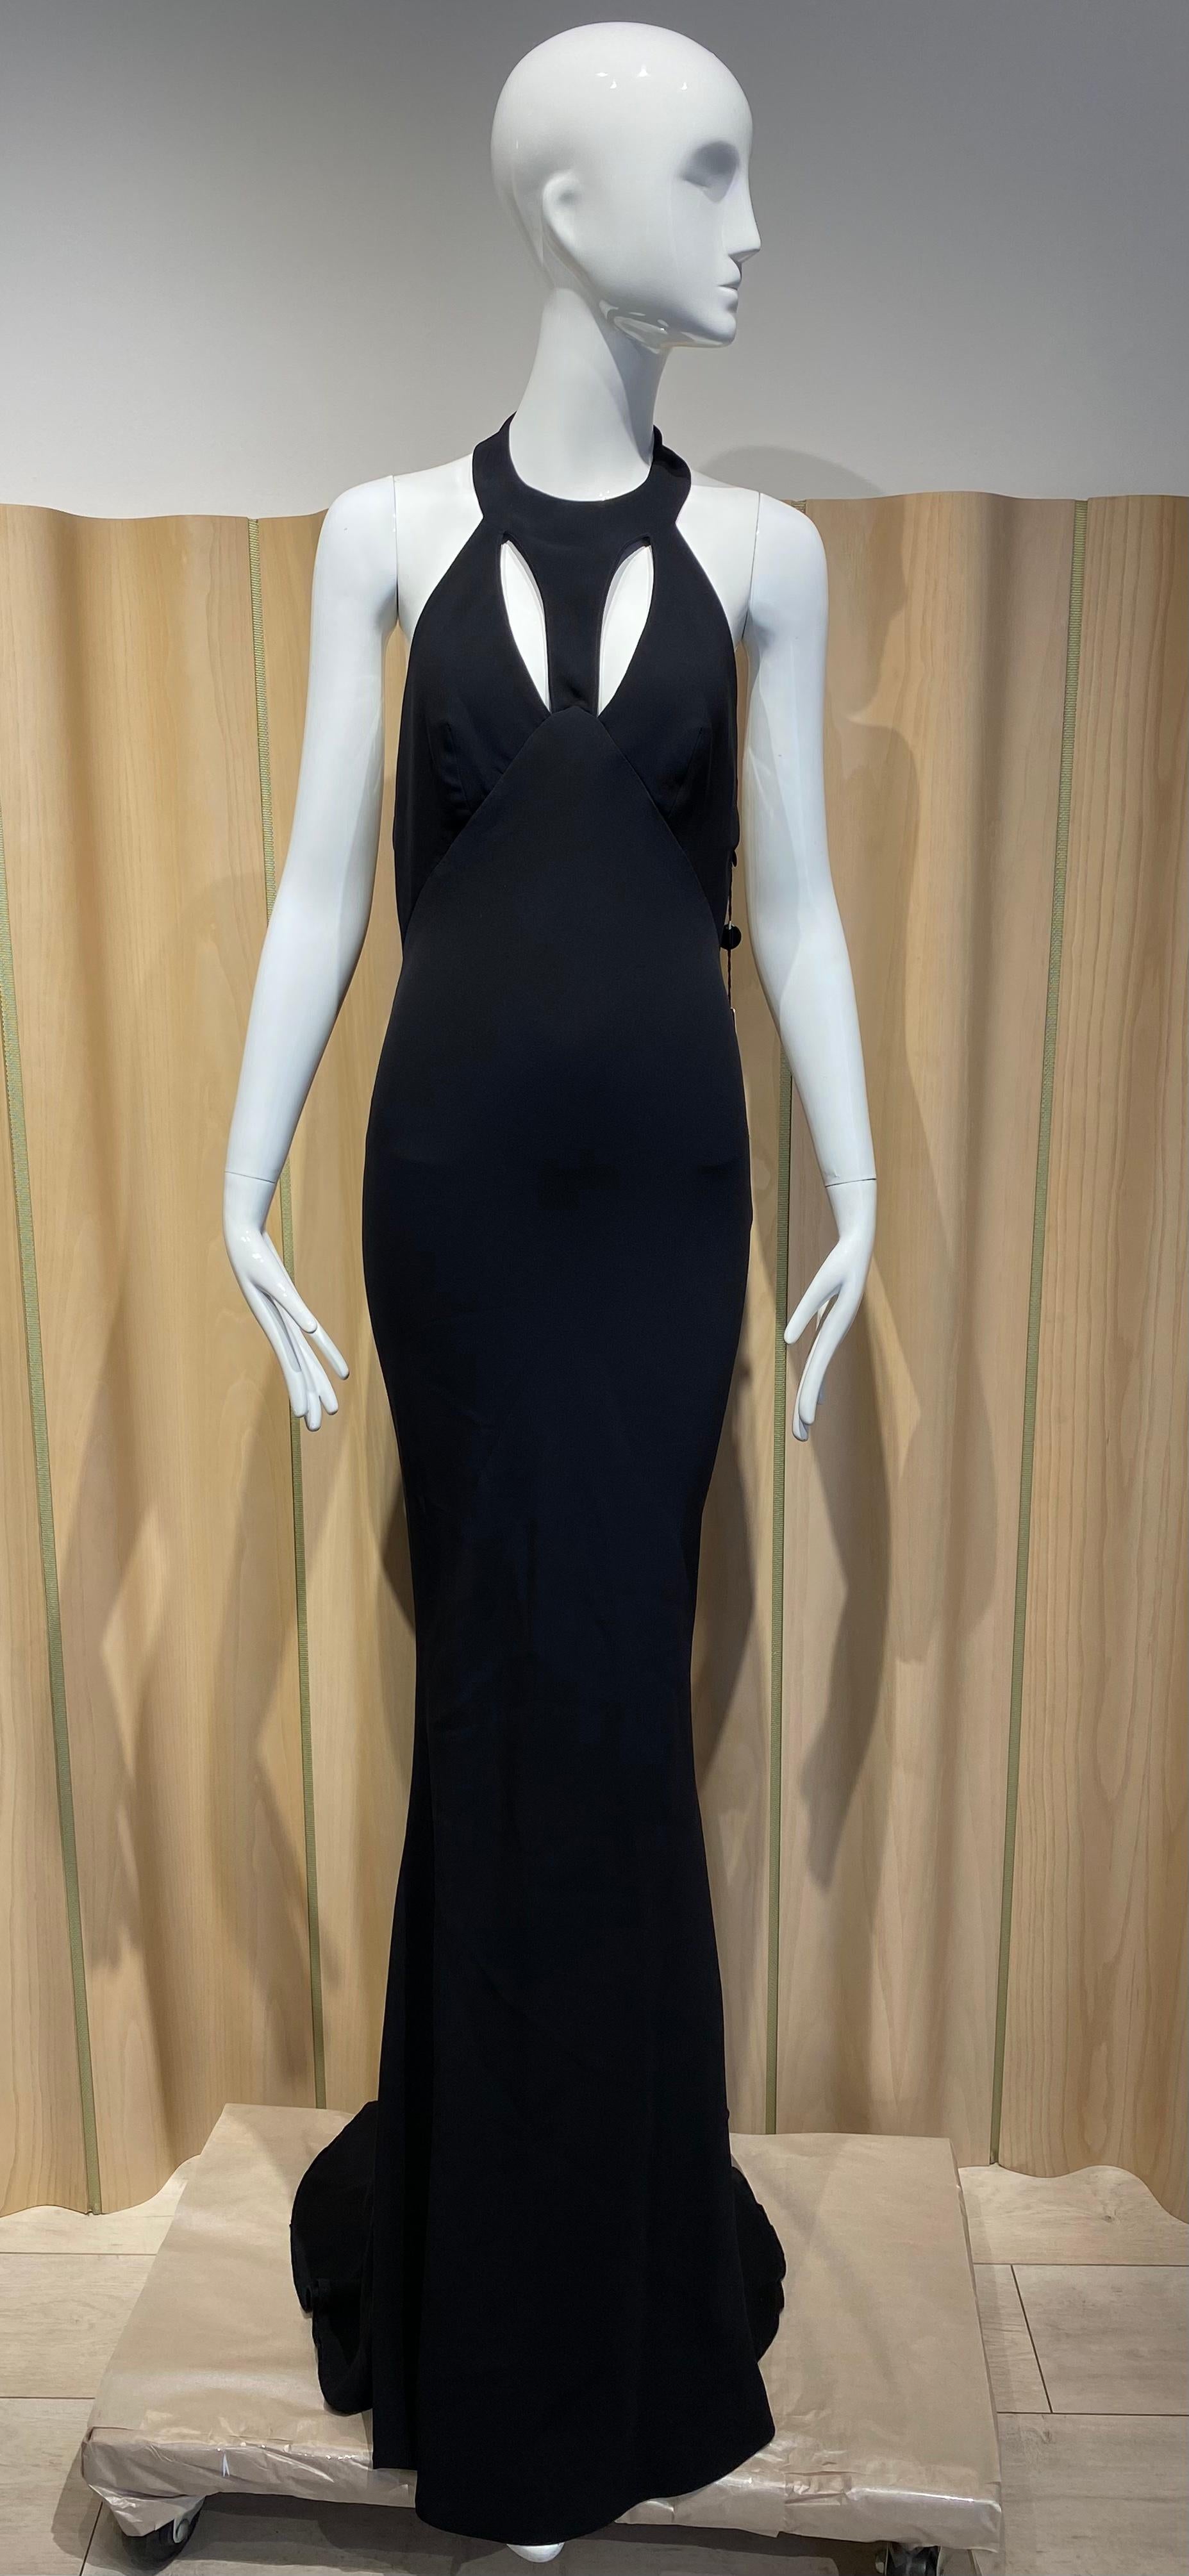 Sexy 90s Gianni Versace Black Cut out gown. Robe marquée taille 42
Voir la mesure :
Buste : 34